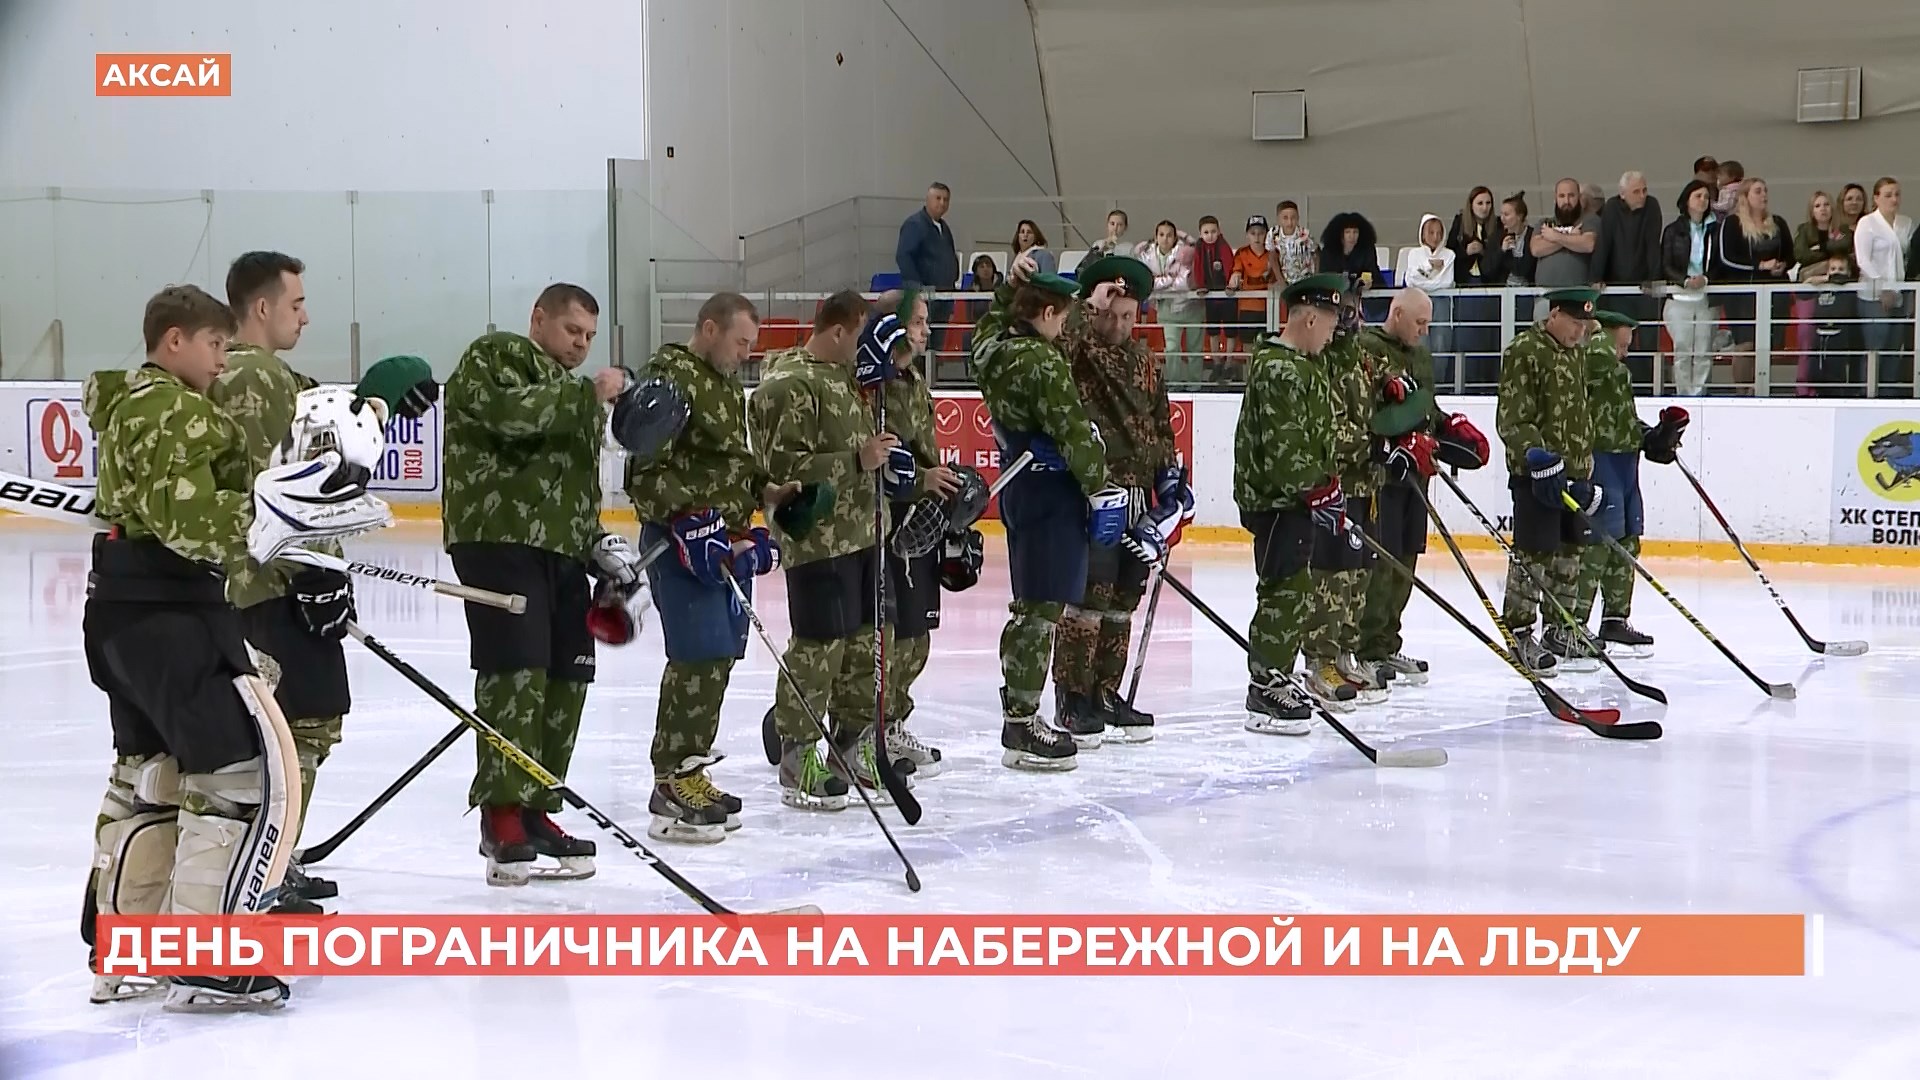 Ростовские пограничники отметили профессиональный праздник хоккейным матчем